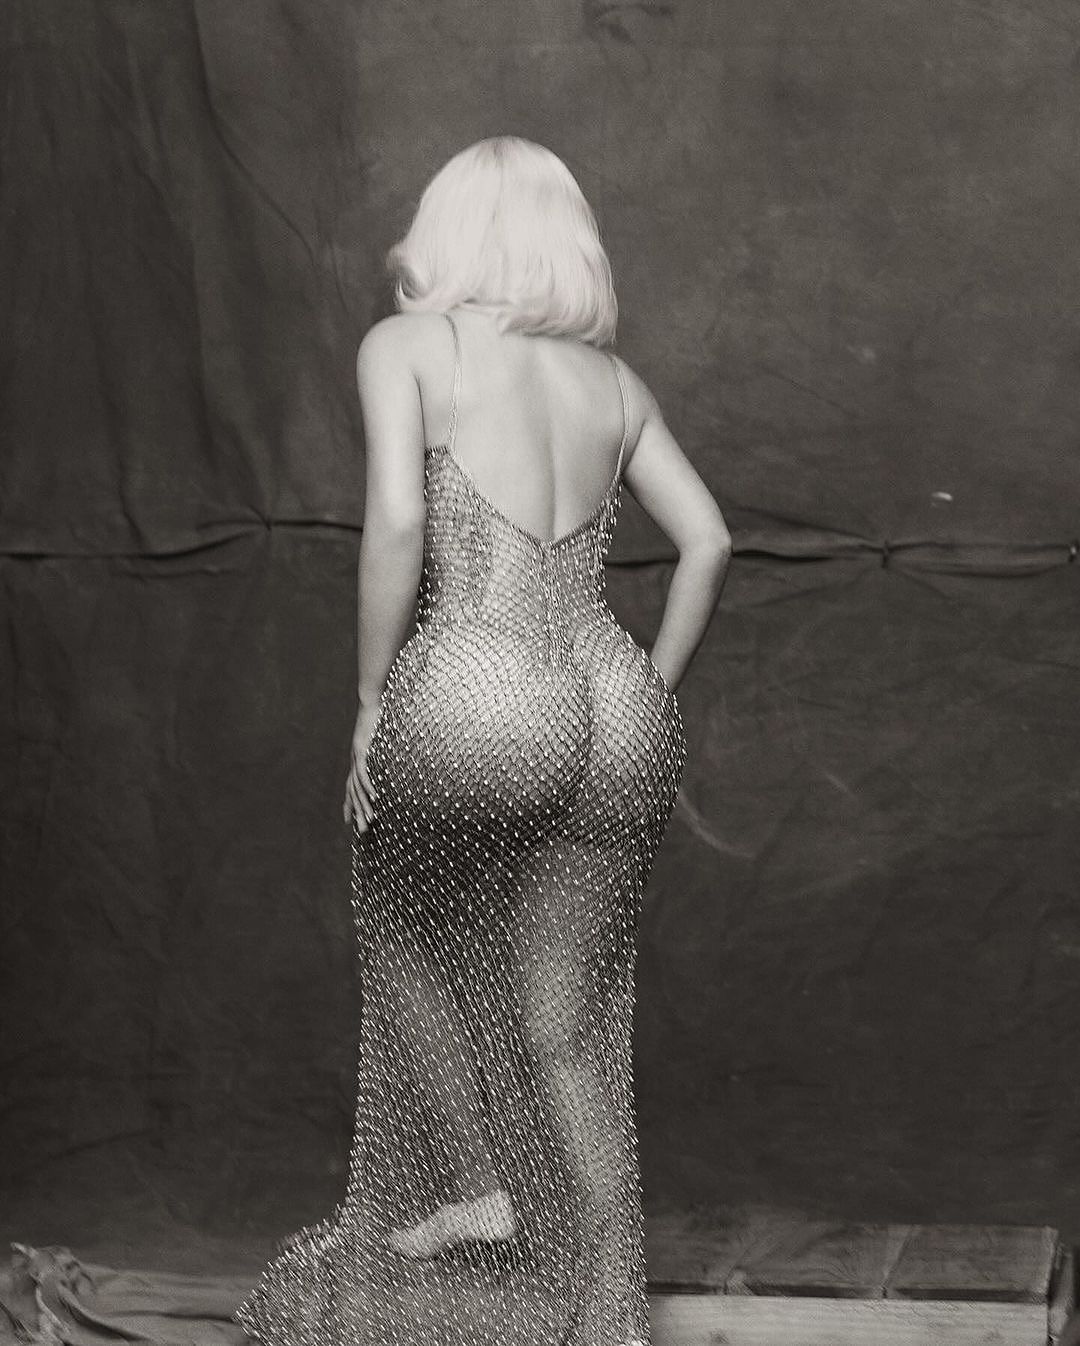 Kim Kardashian Channeled Marilyn Monroe in Her Latest Photoshoot Wearing a Fendi Look with Stella McCartney Heels 2